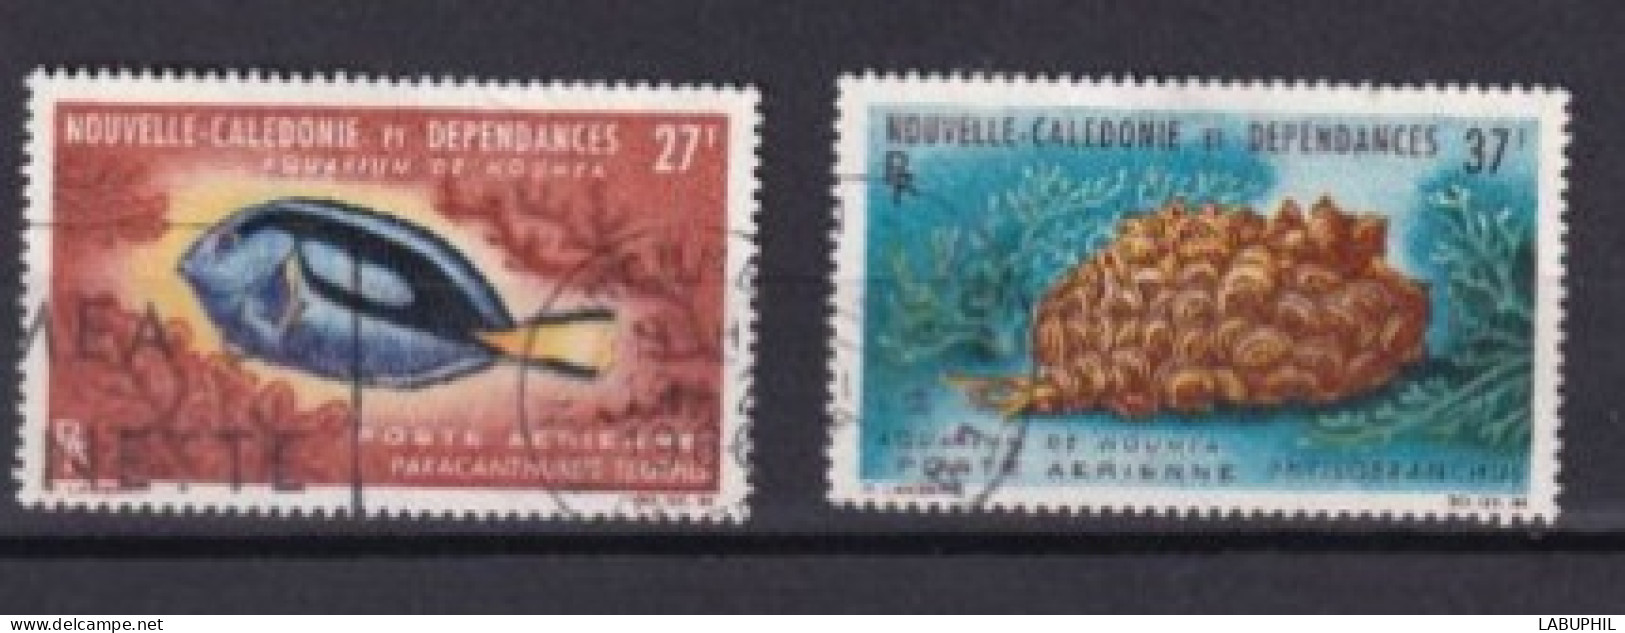 NOUVELLE CALEDONIE Dispersion D'une Collection Oblitéré Used  1965 Faune - Oblitérés